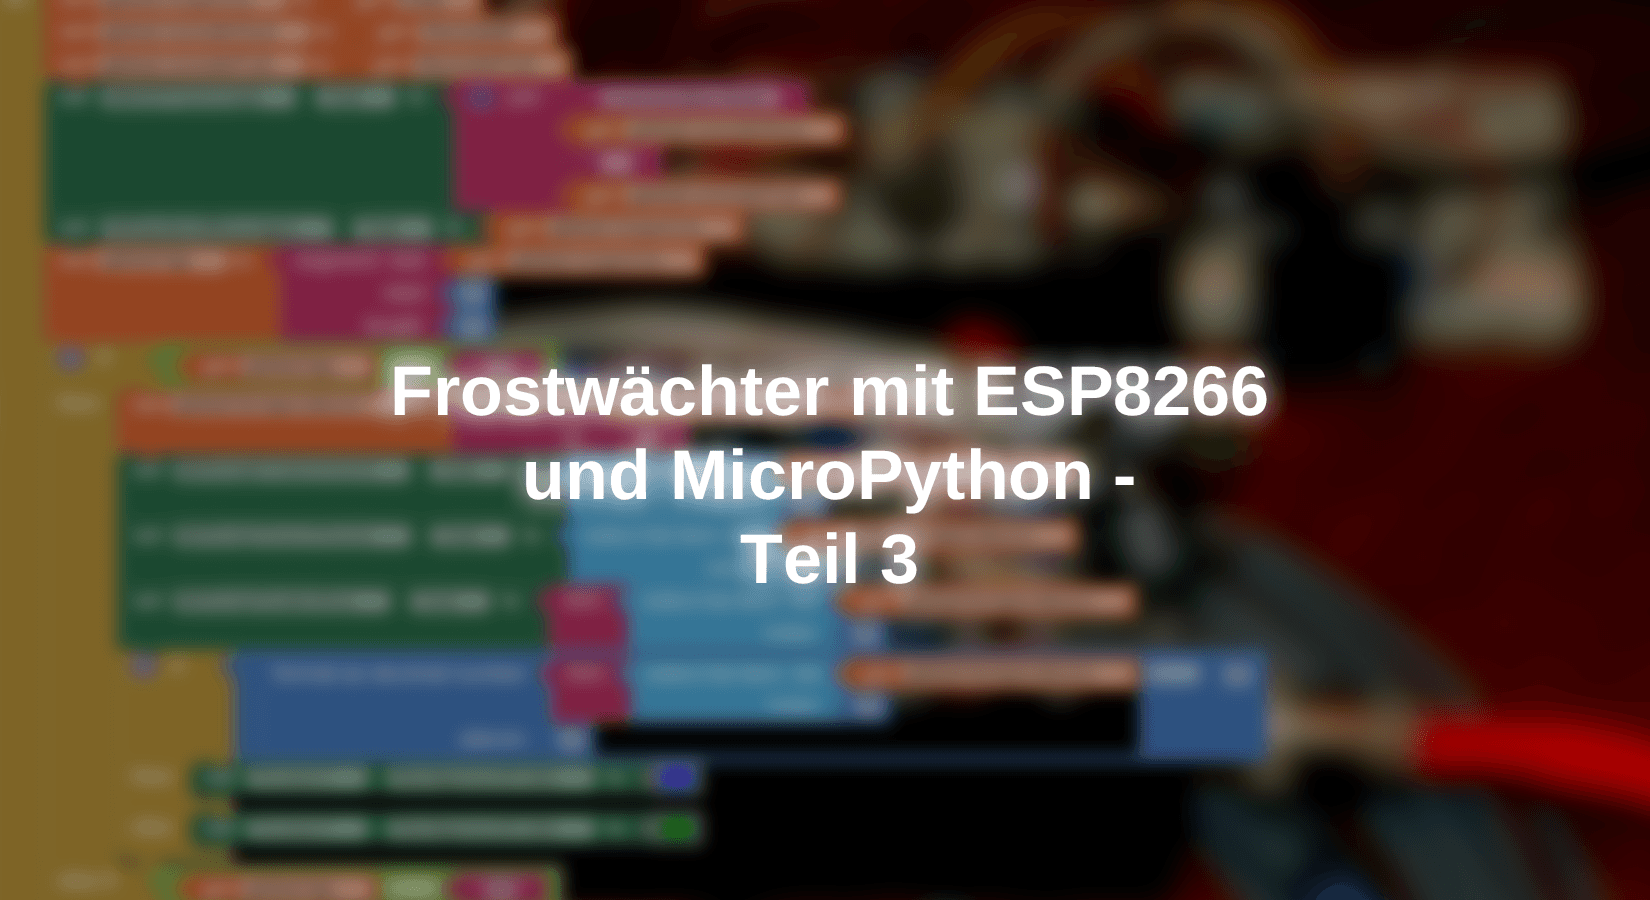 Frostwächter mit ESP8266 und MicroPython - Teil 3 - AZ-Delivery